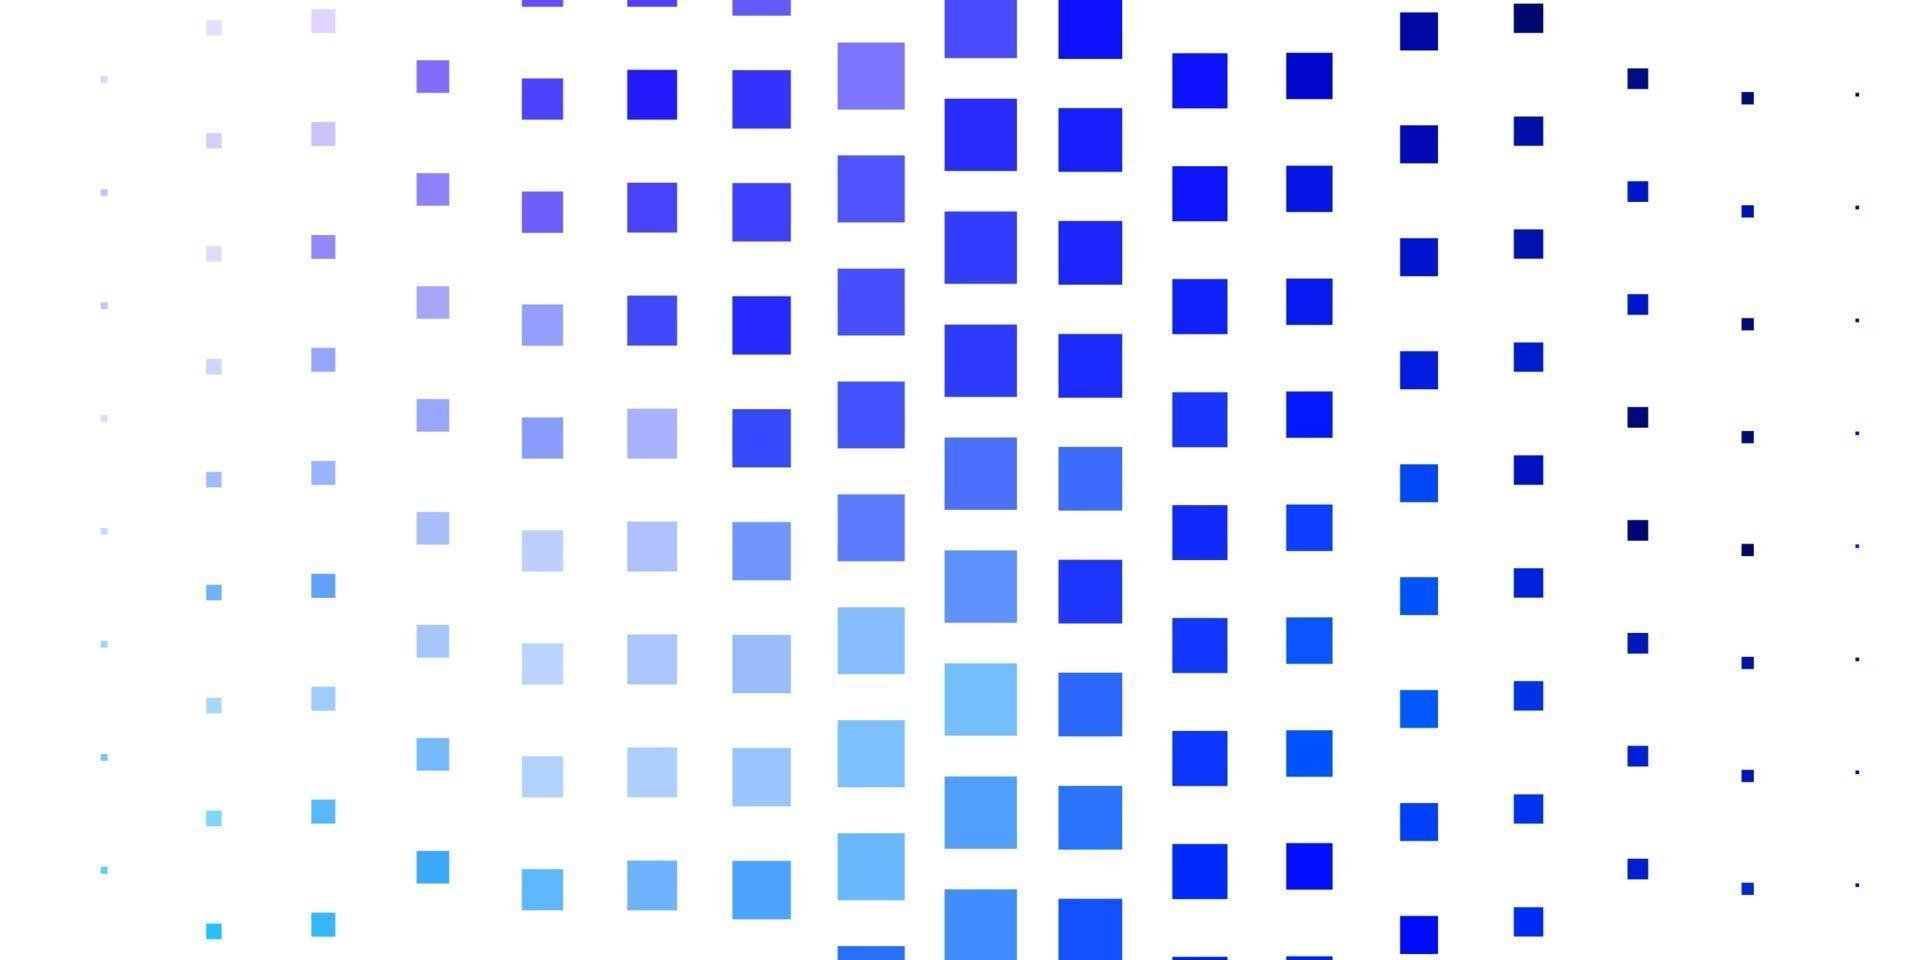 toile de fond de vecteur rose clair, bleu avec des rectangles.